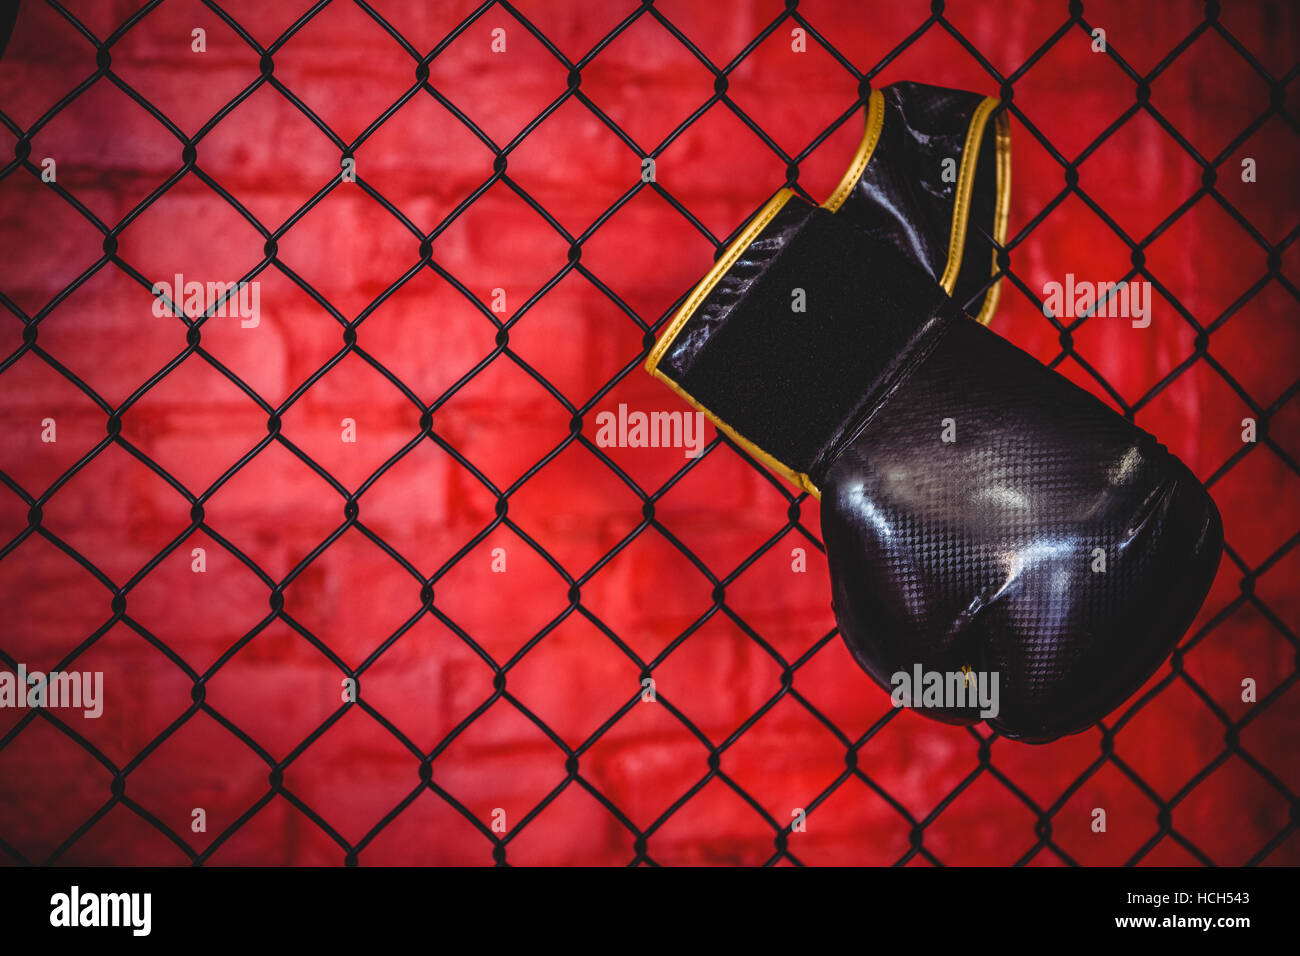 Gant de boxe suspendu à Wire Mesh fence Banque D'Images